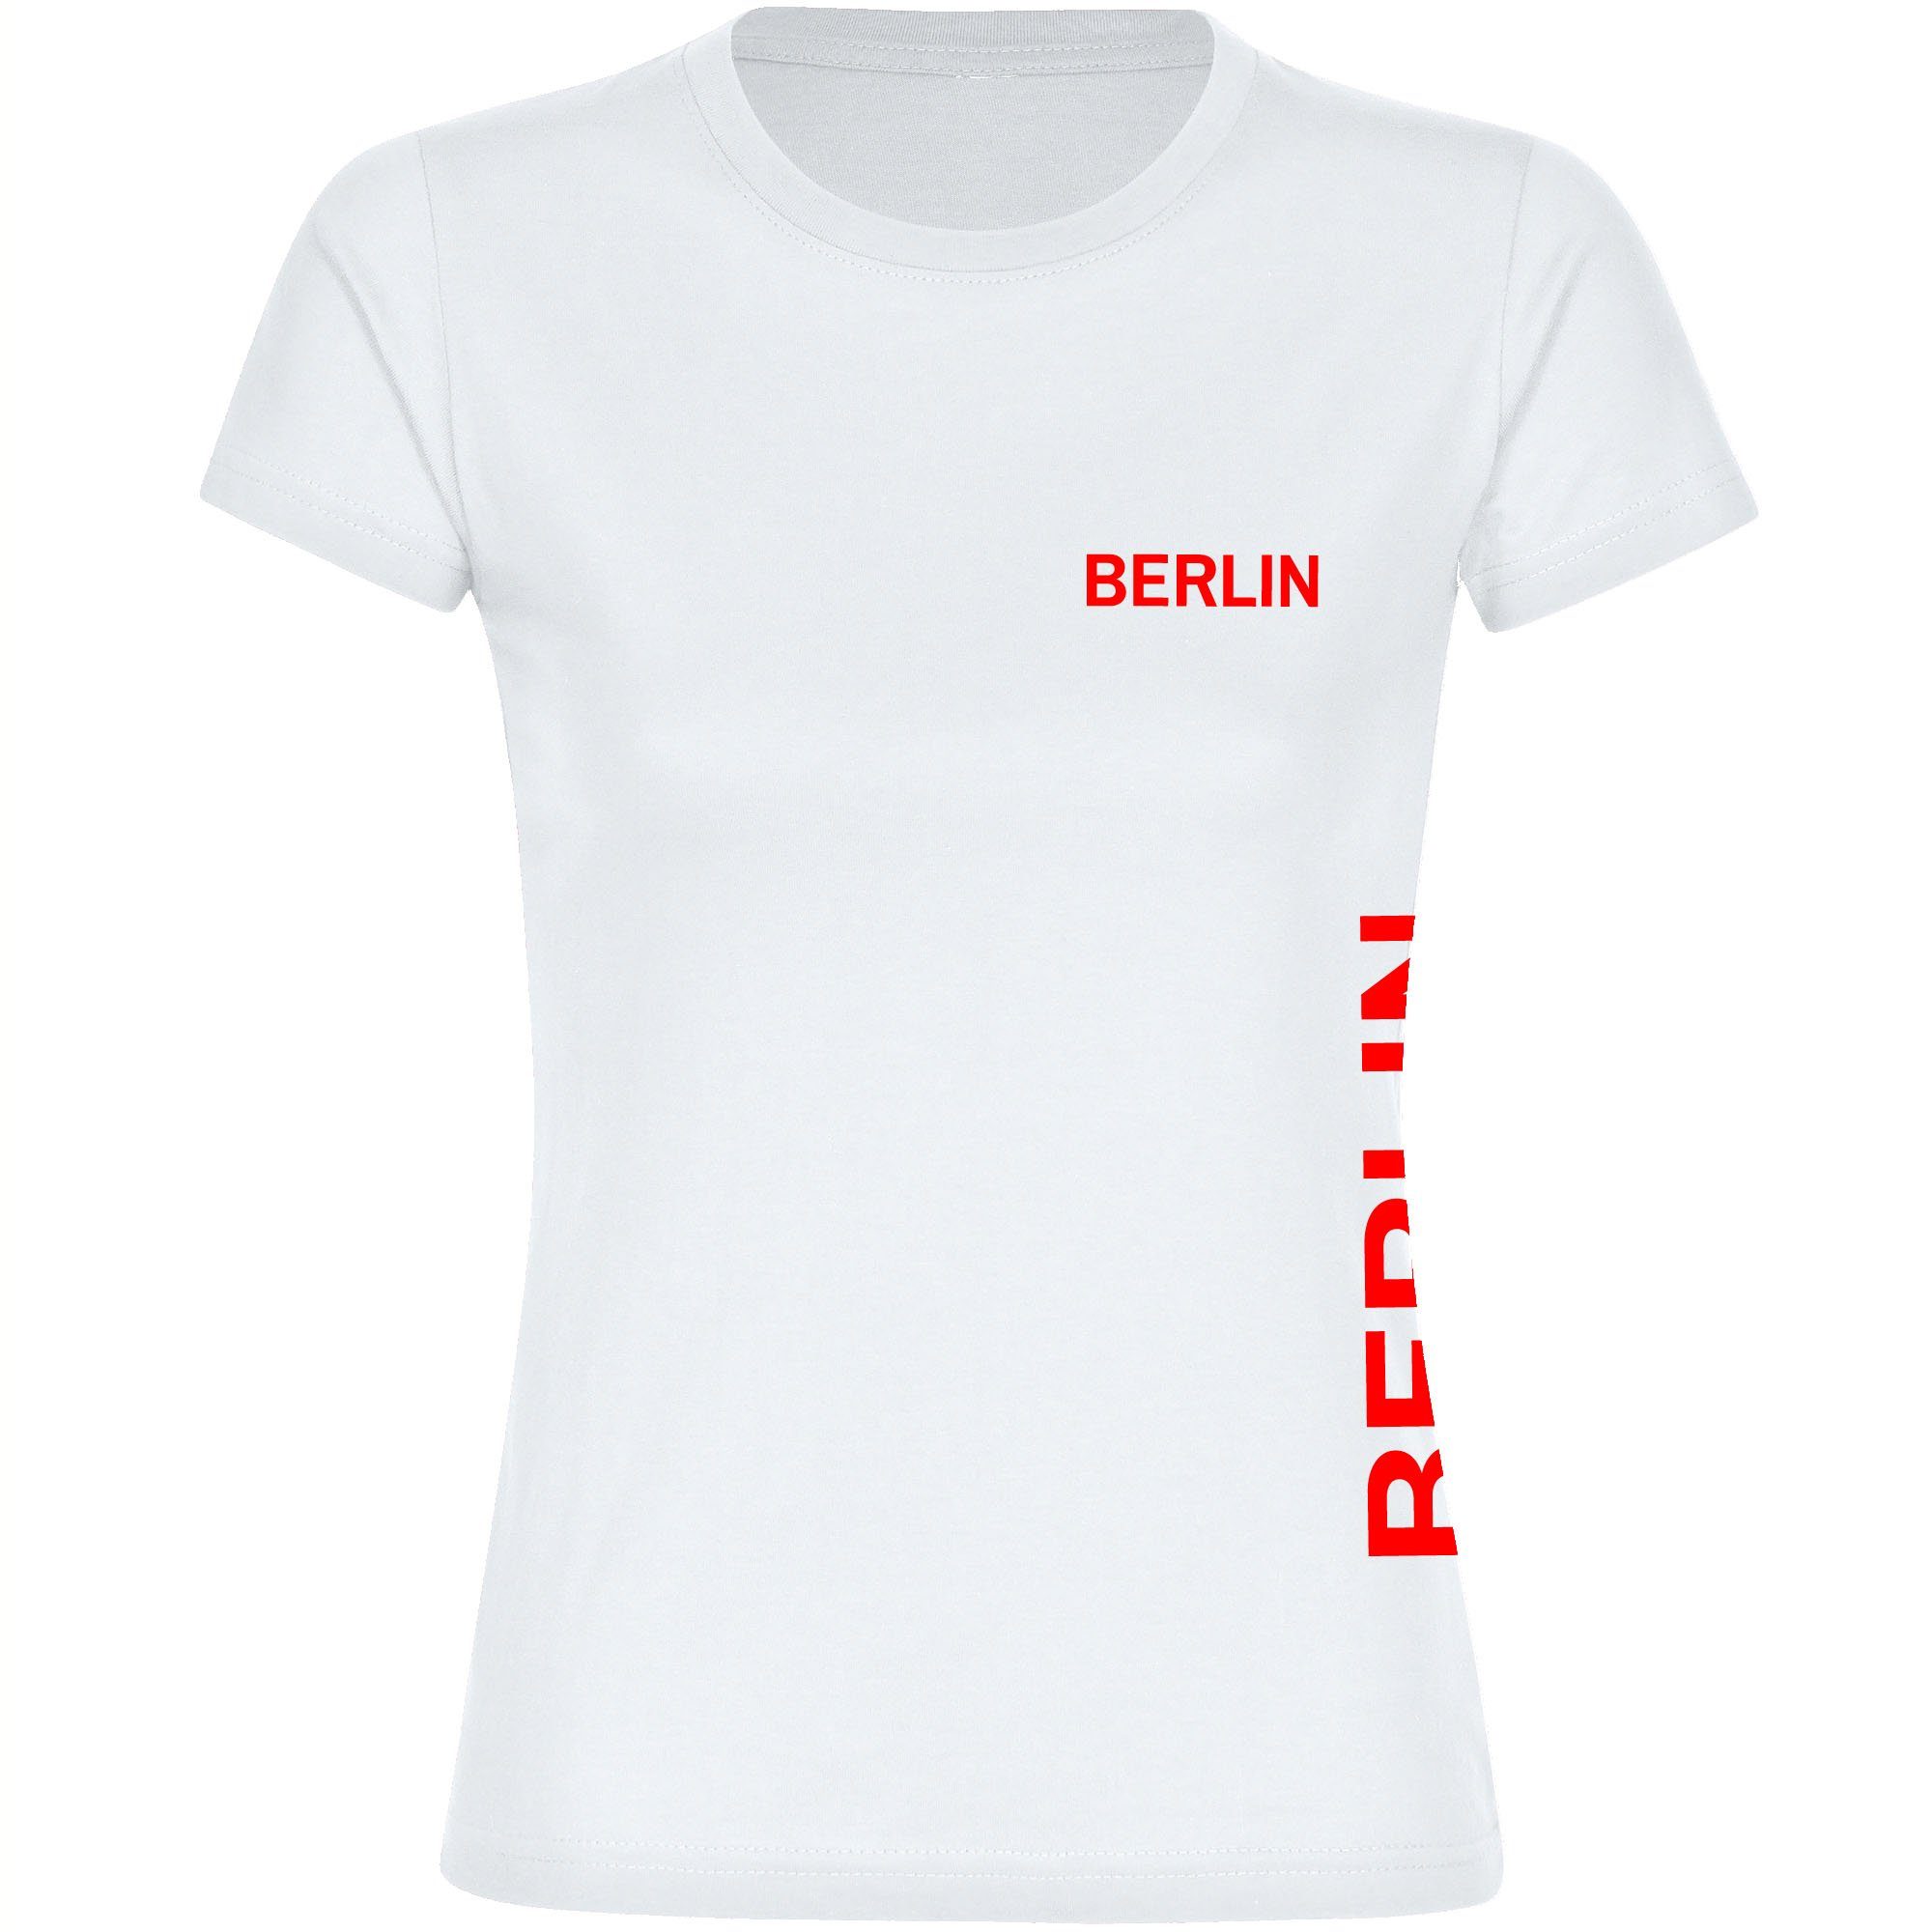 multifanshop T-Shirt Damen Berlin rot - Brust & Seite - Frauen